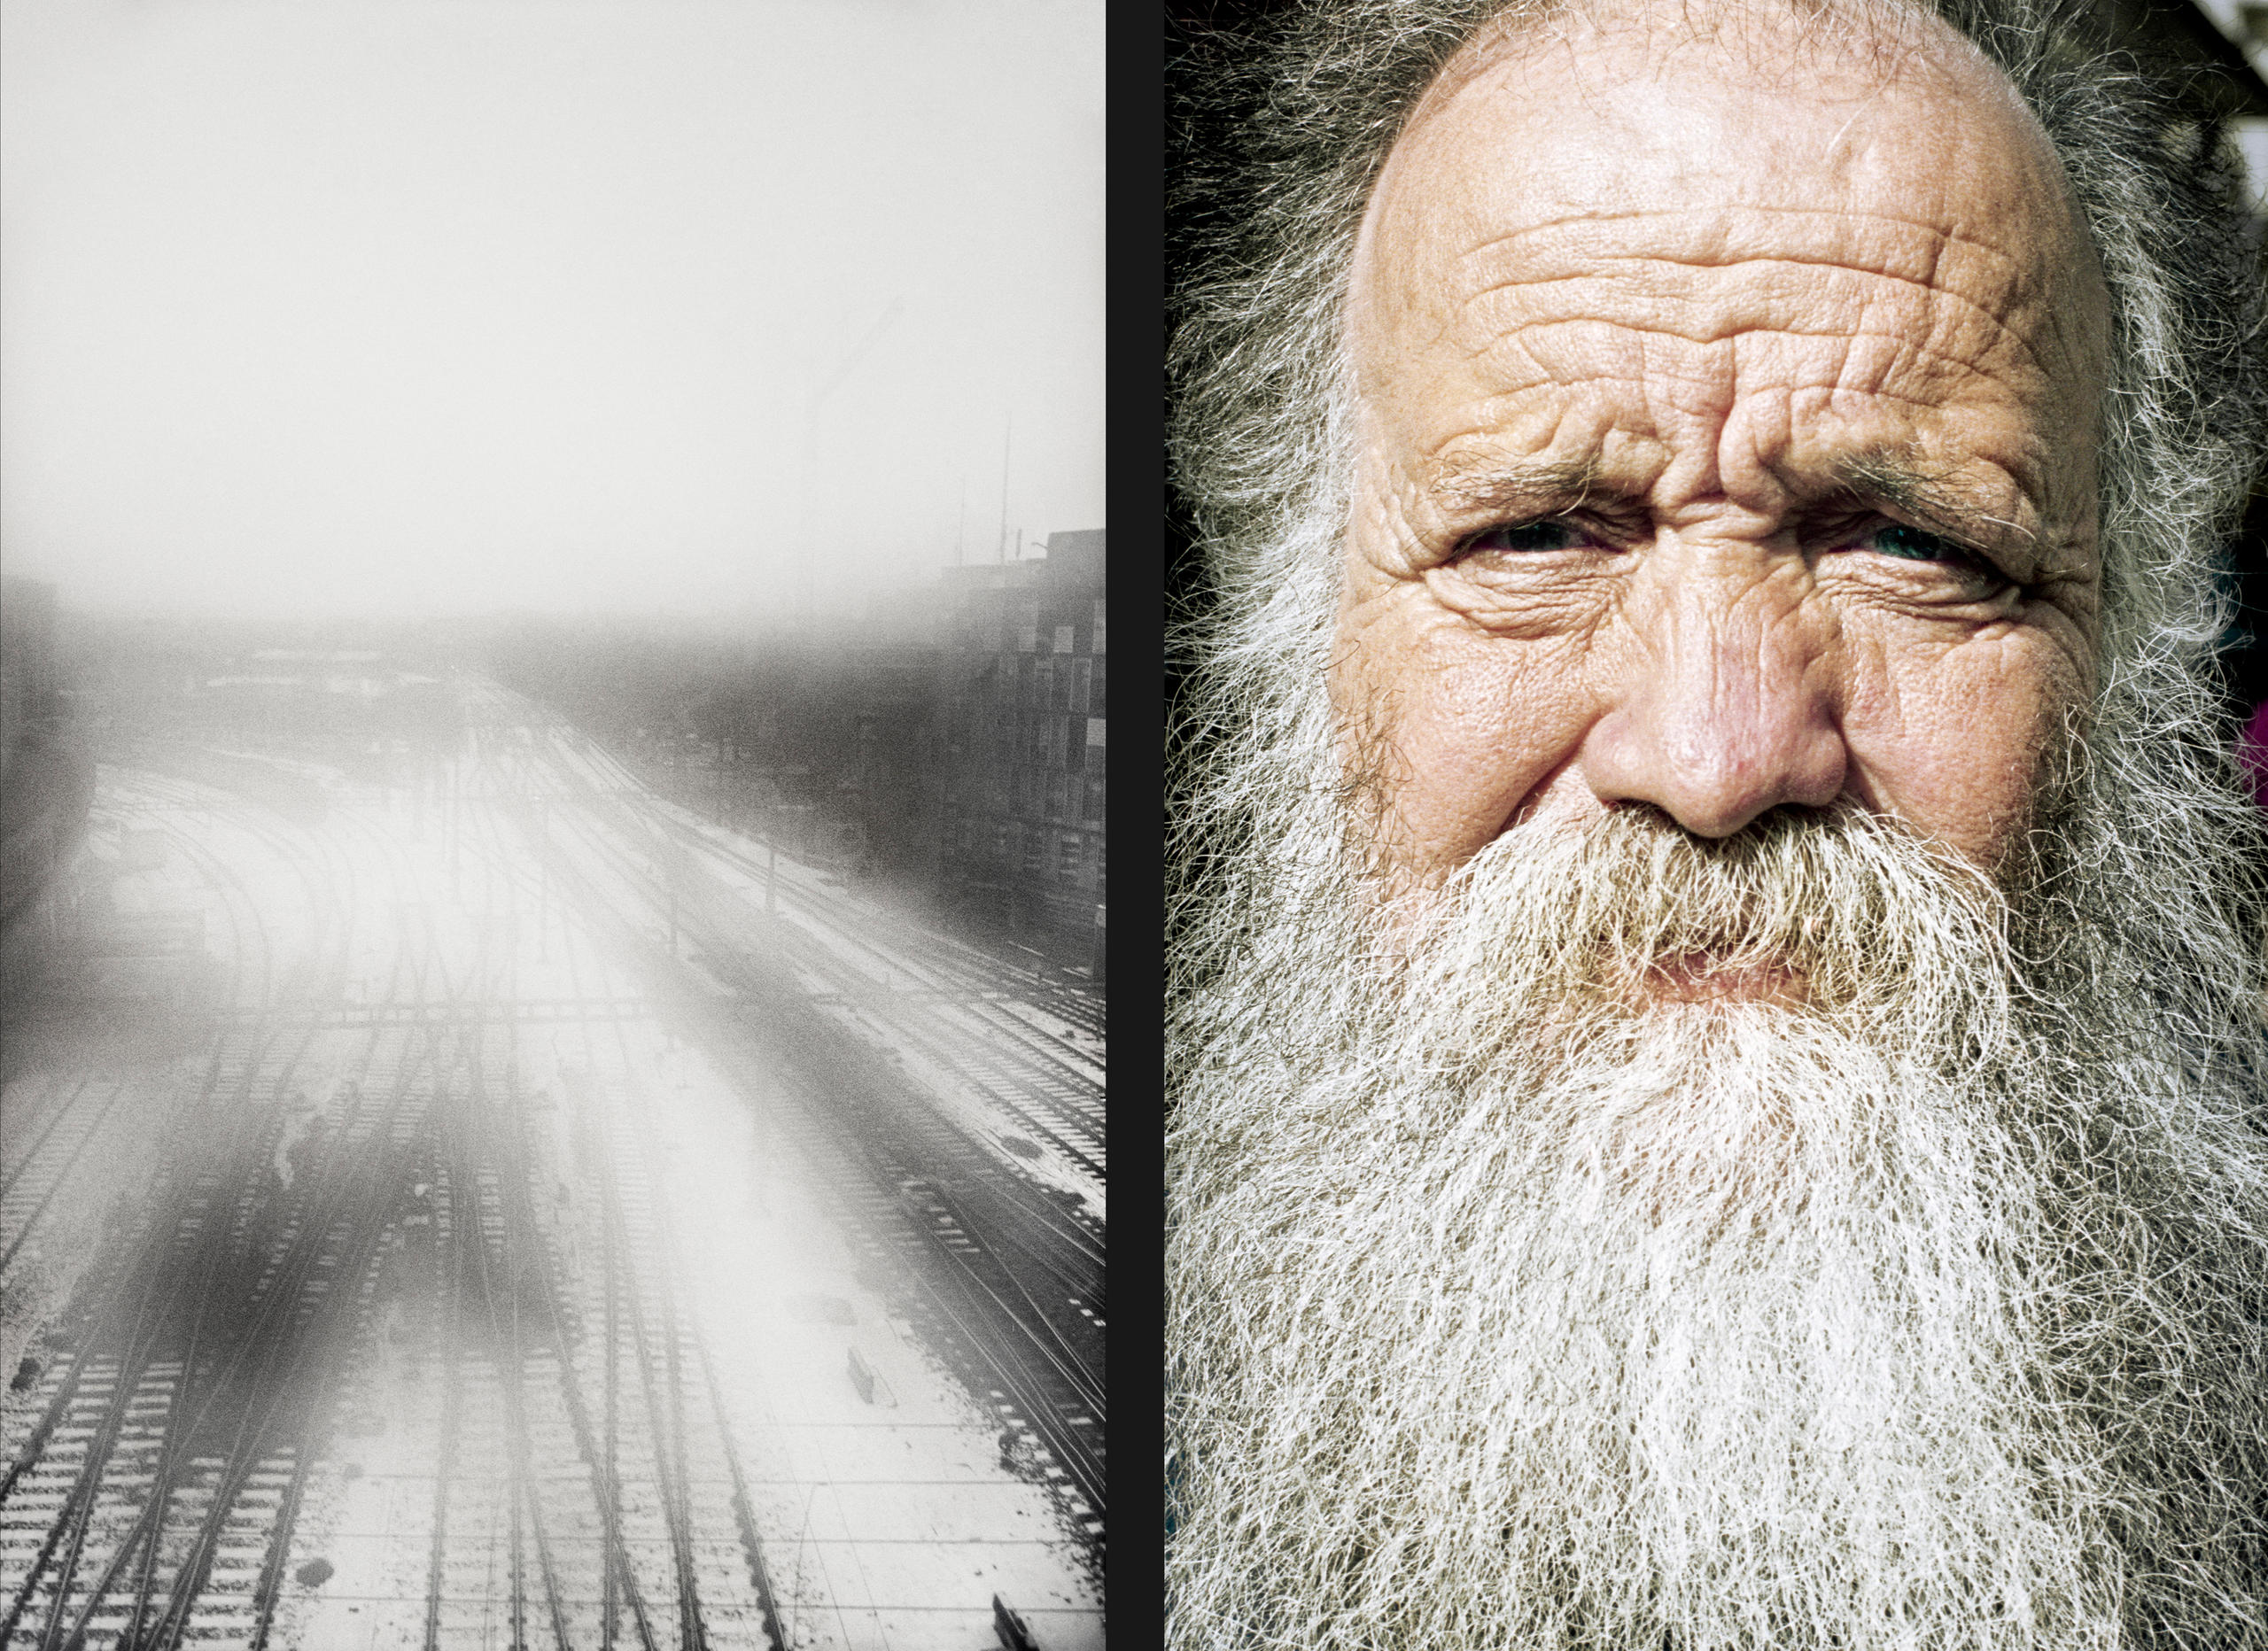 Rail tracks in winter / portrait of an elderly man